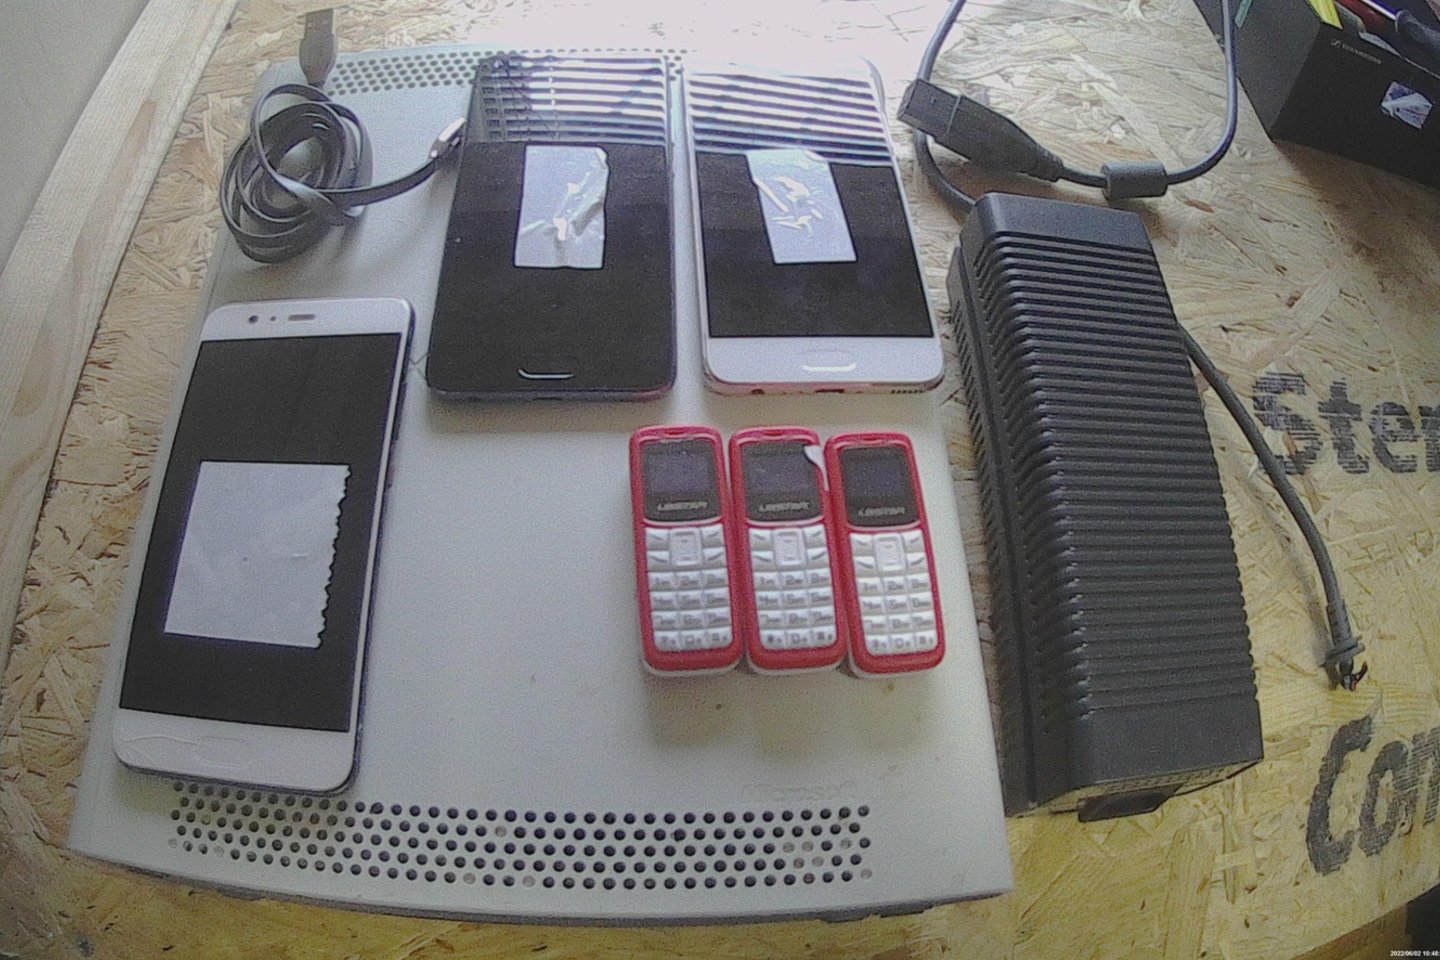  Pravieniškių nuteistiesiems telefonai keliavo paslėpti žaidimų konsolėse.<br>Kalėjimų departamento nuotr.